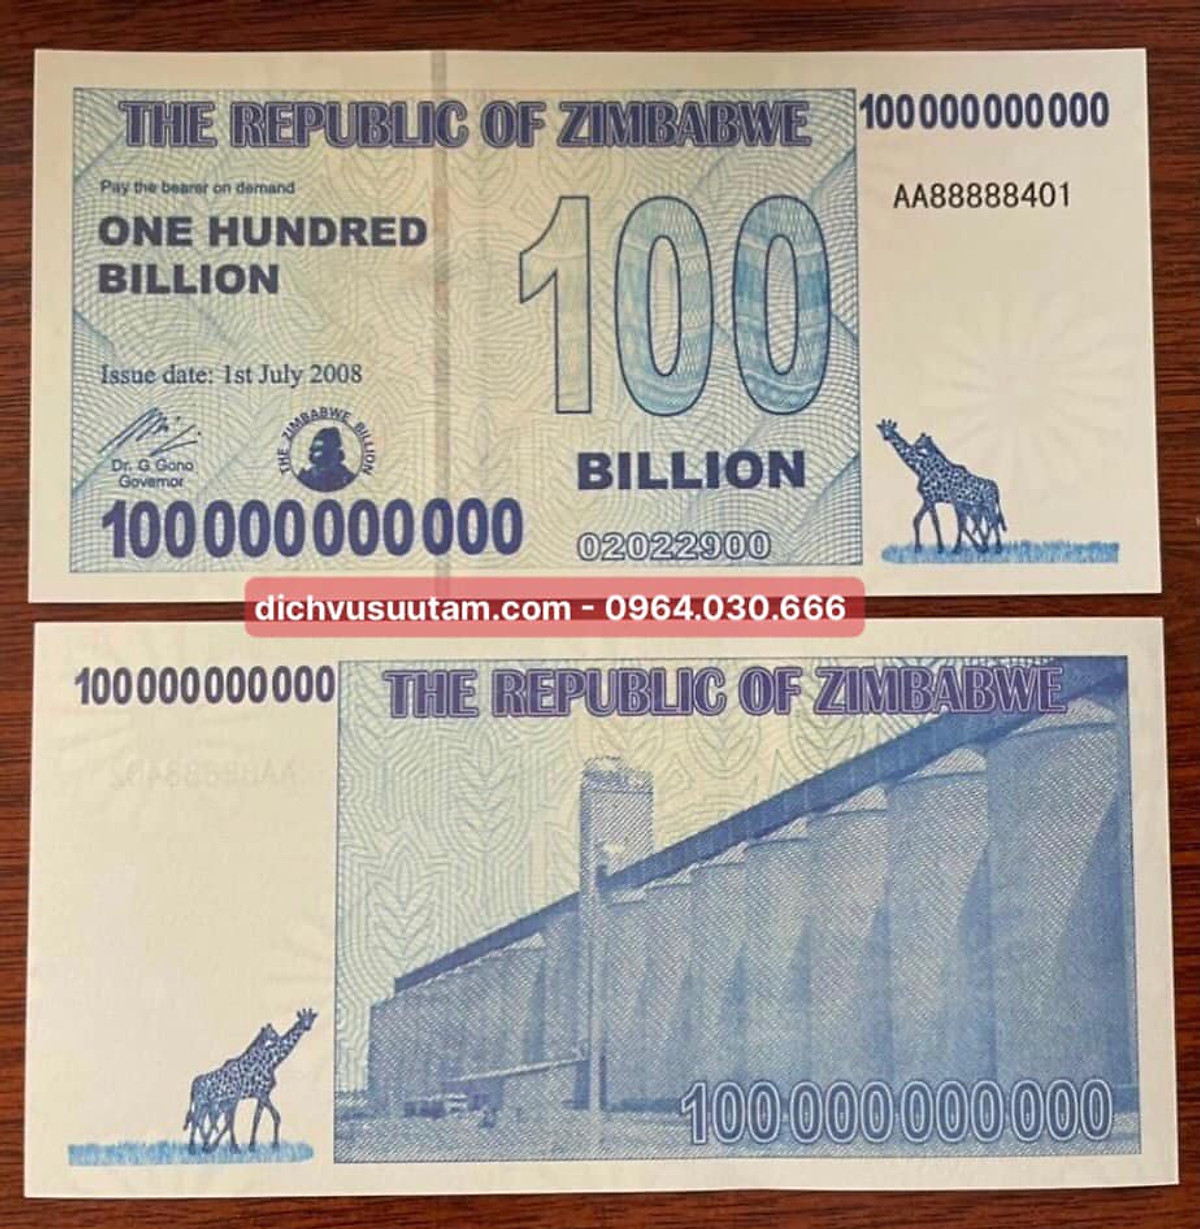 Tiền làm phát 100 triệu dollars Zimbabwe lưu niệm phát quang khi ...